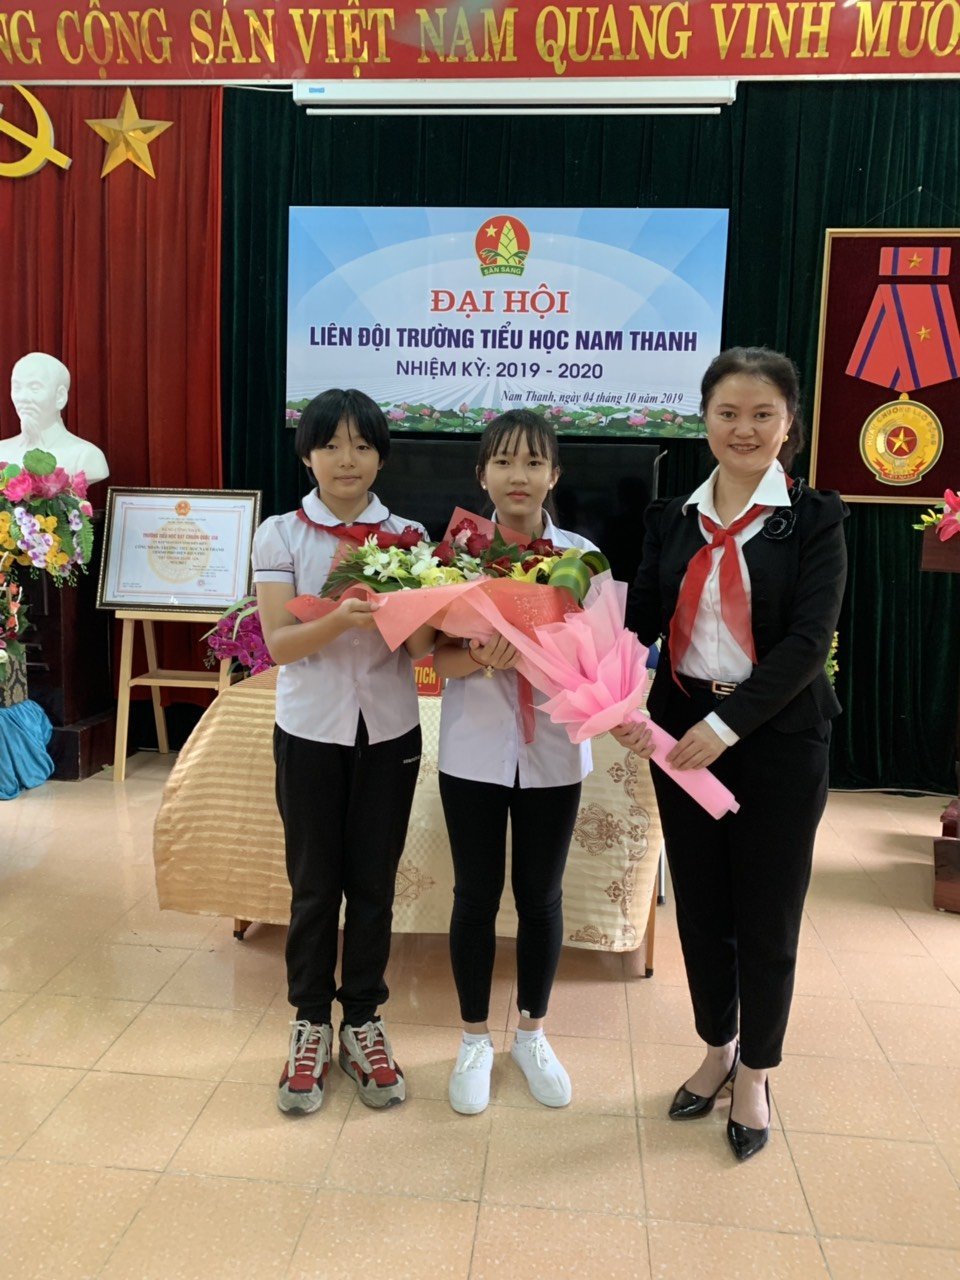 Liên đội trường Tiểu học Nam Thanh tổ chức Đại hội Liên đội  nhiệm kì 2019 – 2020.